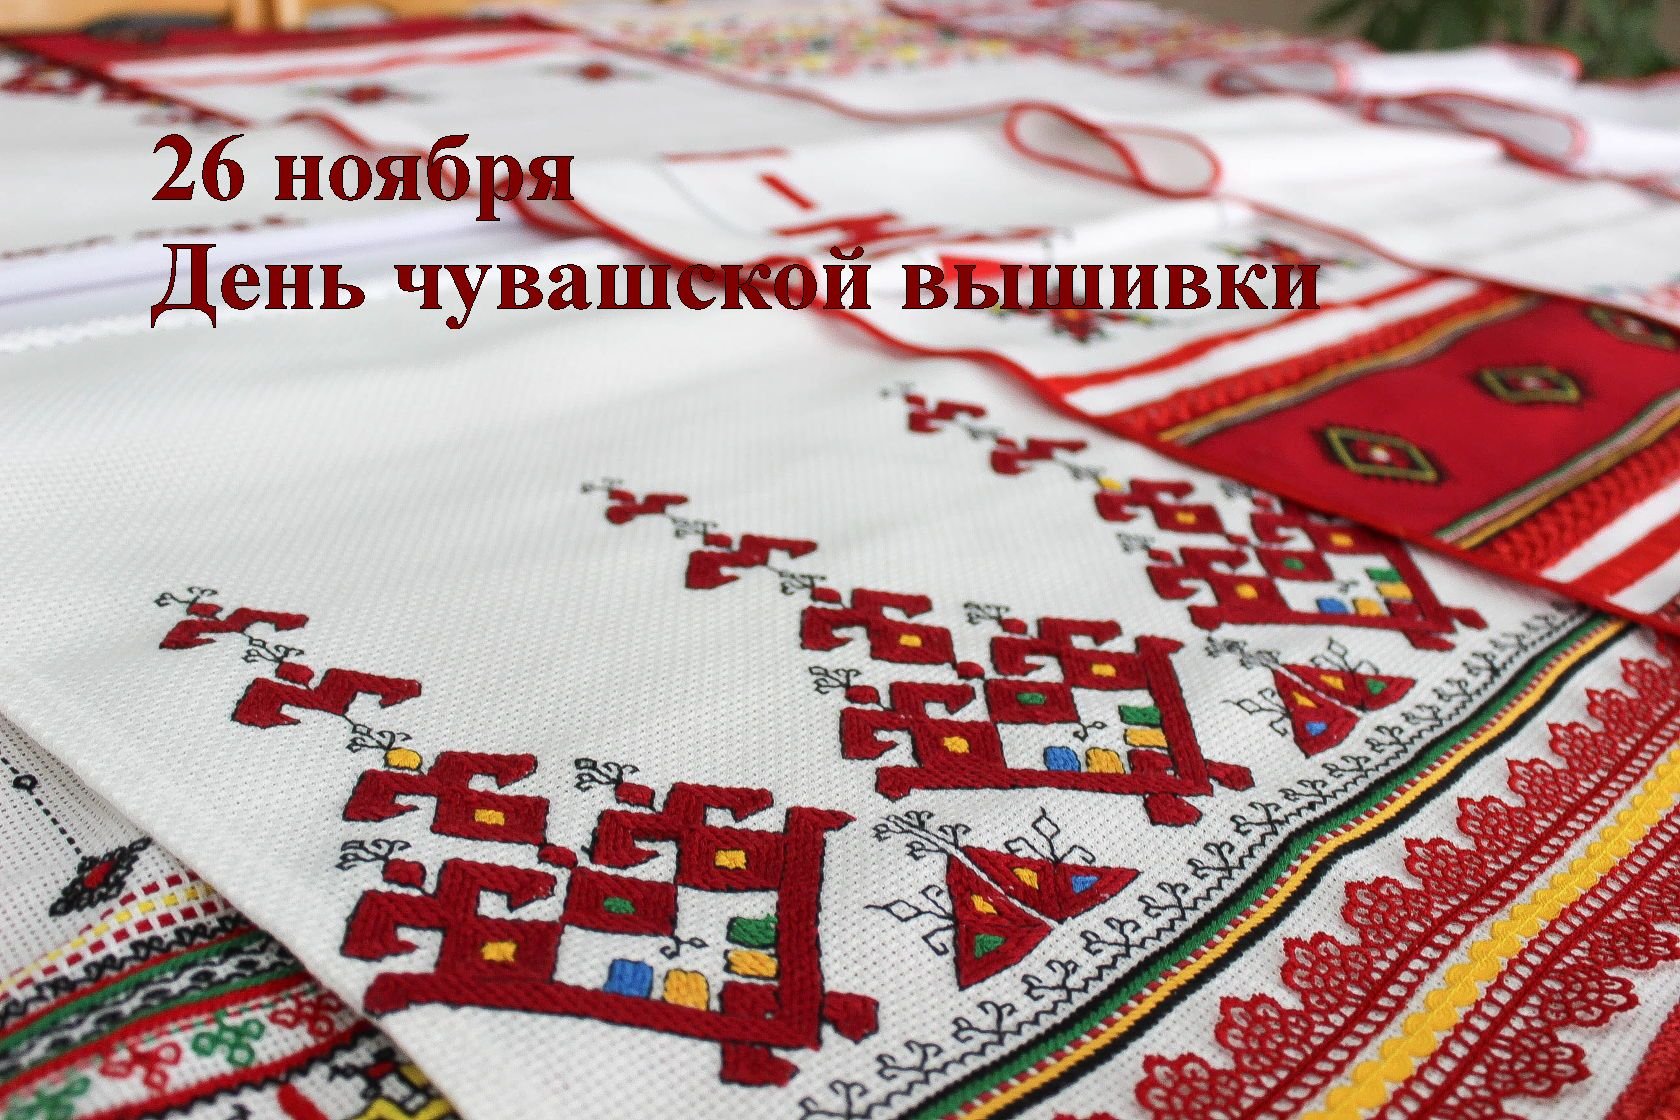 Поздравления с Днем Рождения на чувашском языке